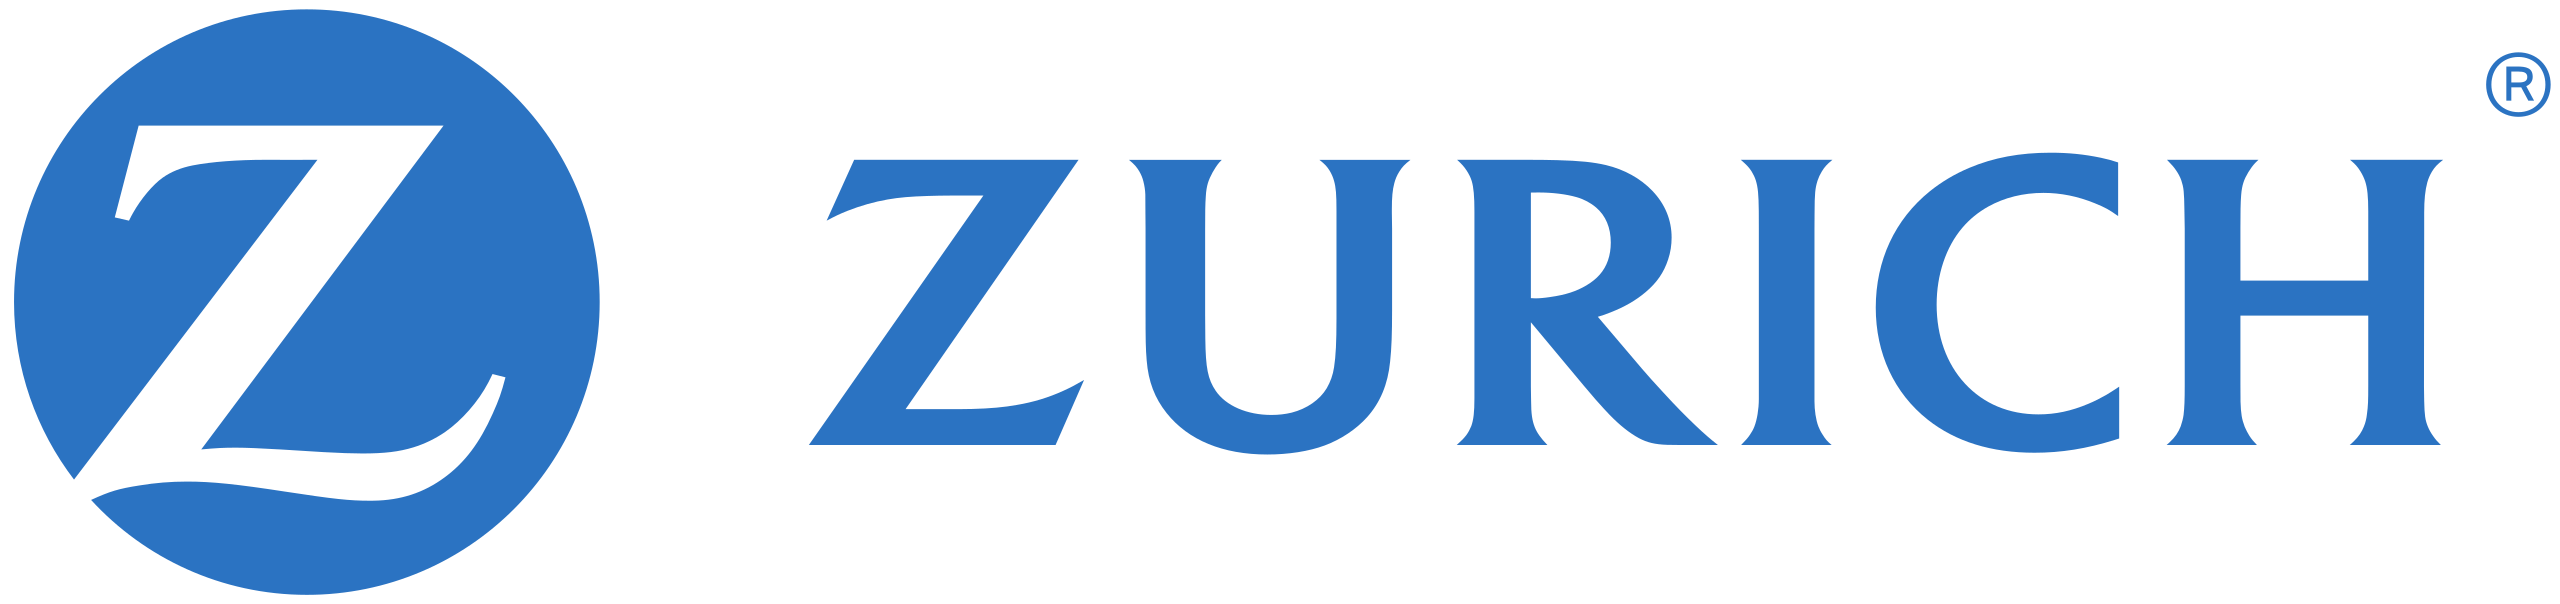 Zurich 로고